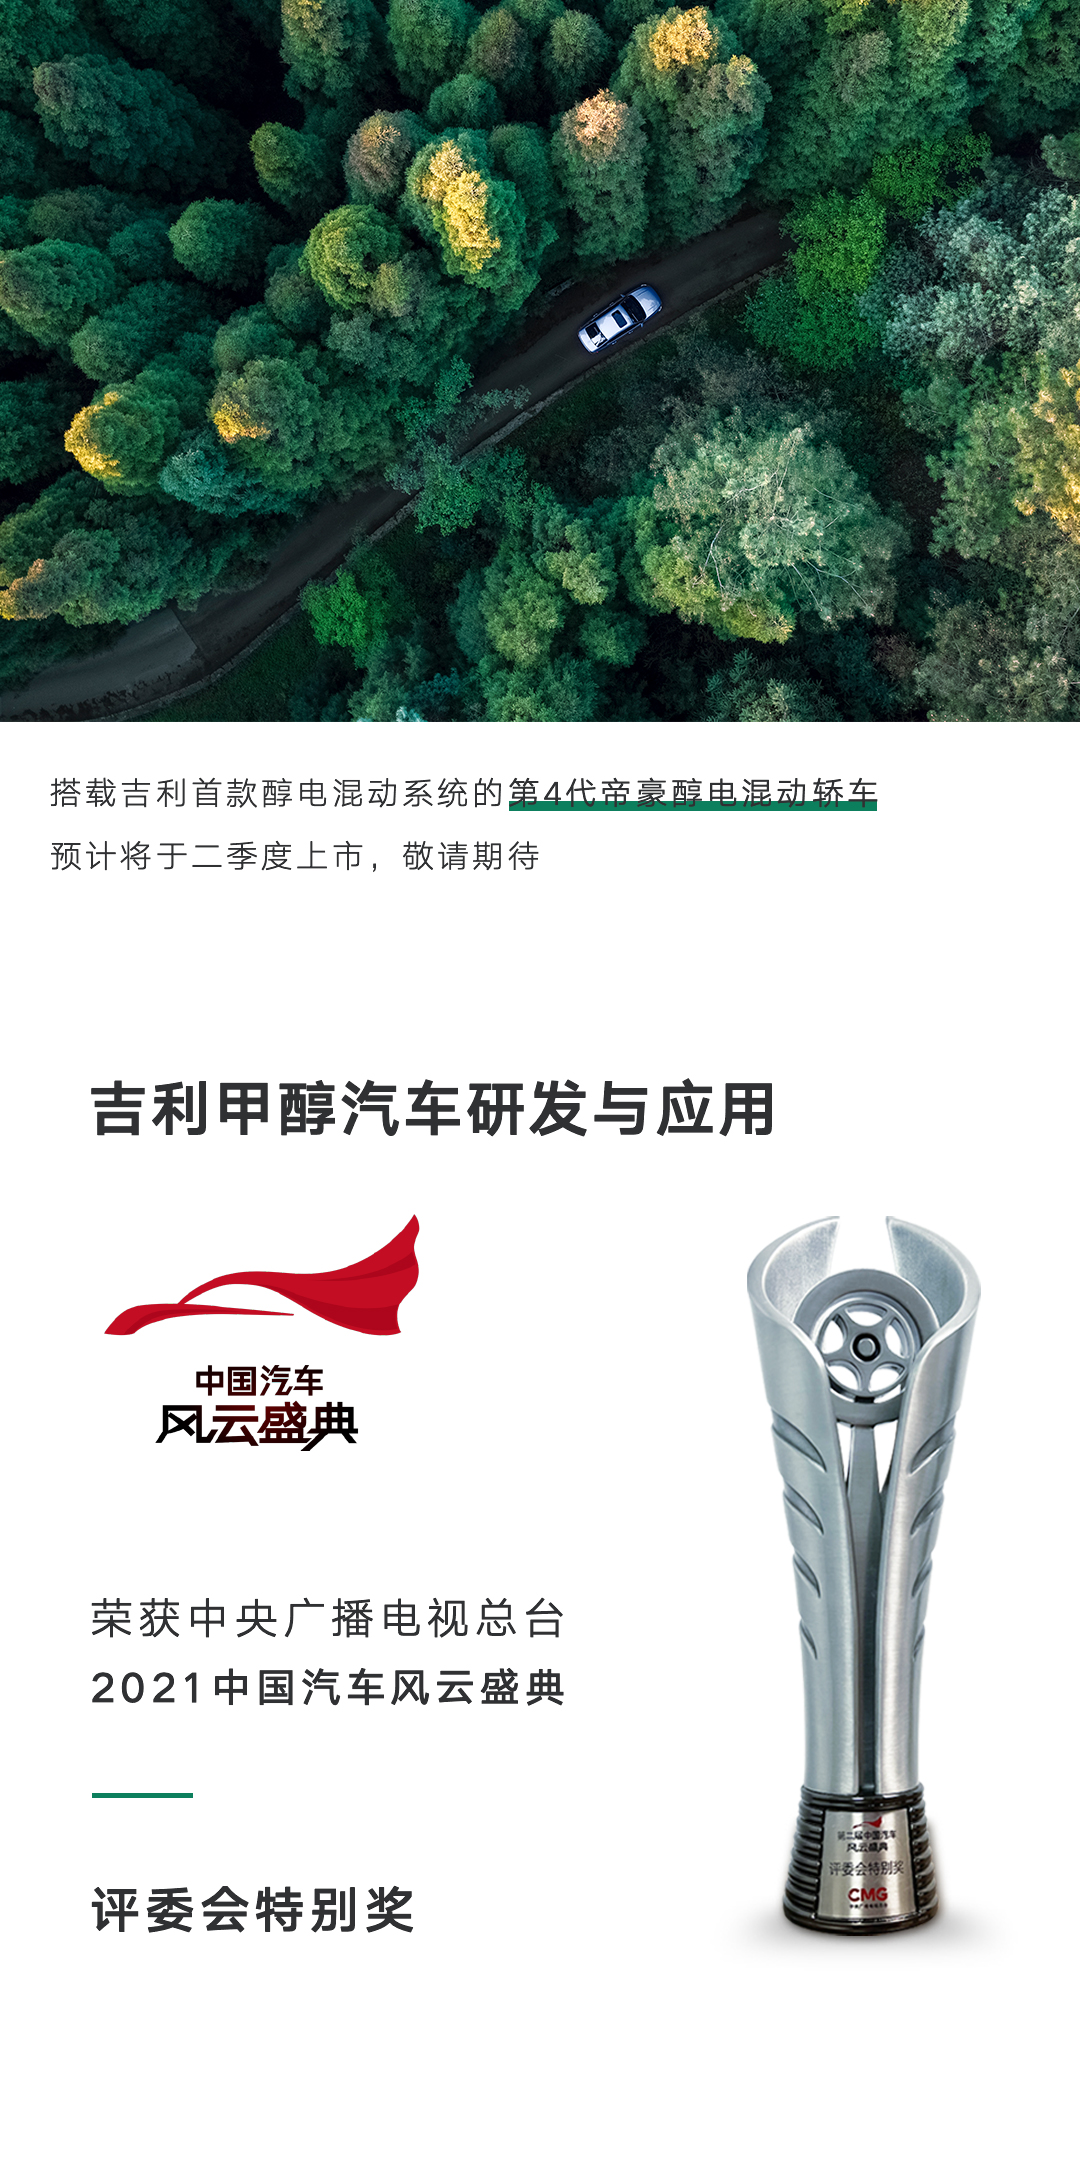 吉利甲醇汽車研發與應用榮獲央視2021中國汽車風云盛典評委會特別獎